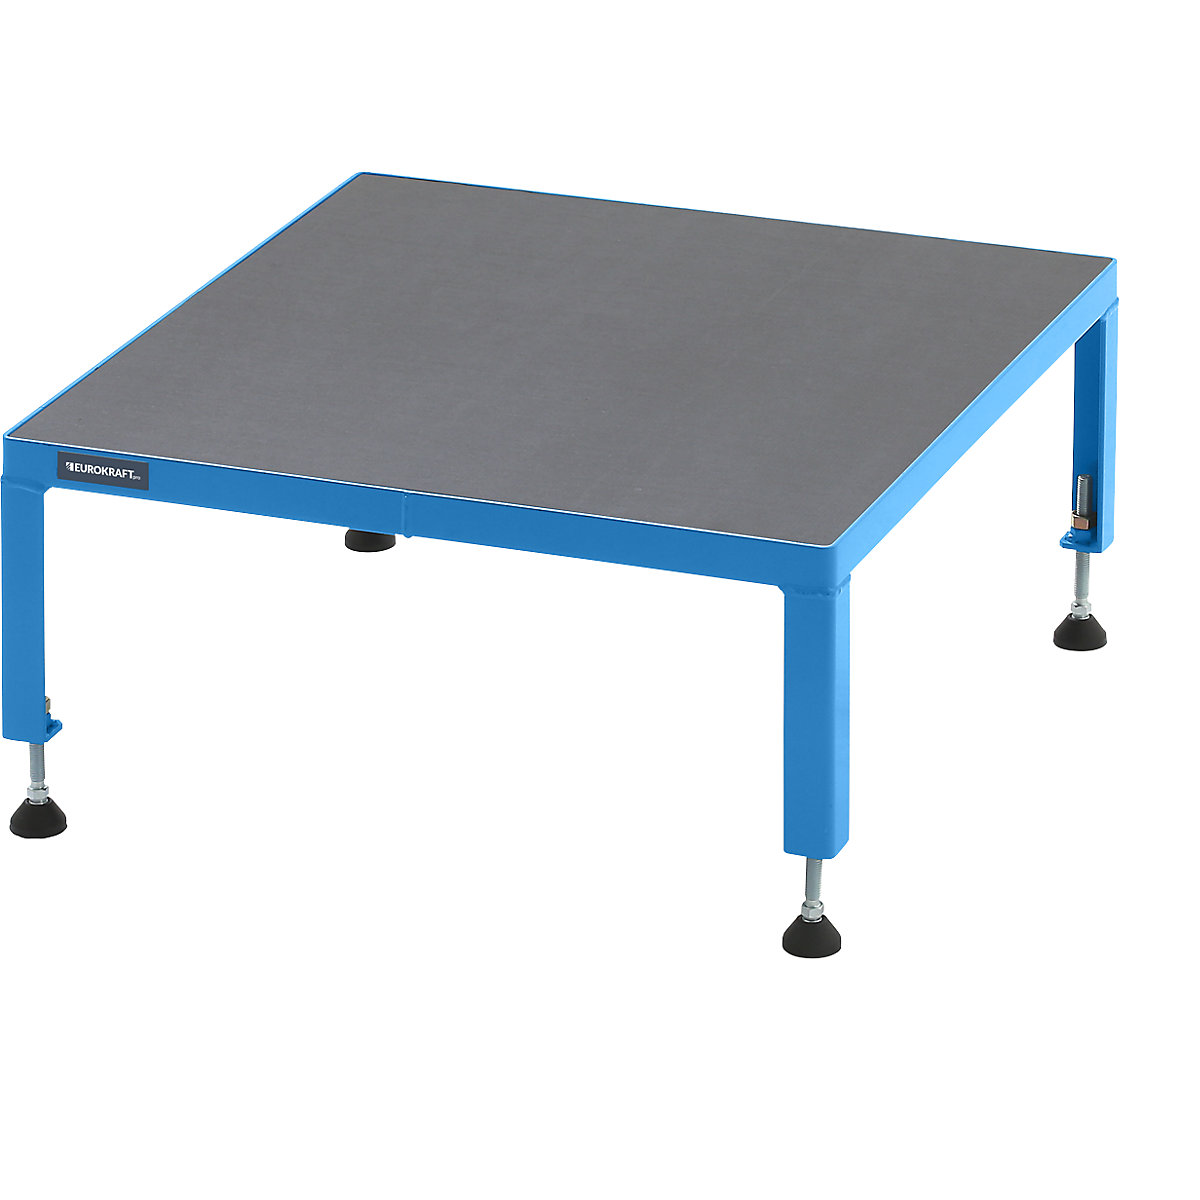 EUROKRAFTpro – Plate-forme de travail réglable en hauteur de 255 à 320 mm, avec plate-forme en multiplis antidérapant, L x l plate-forme 610 x 610 mm, bleu clair